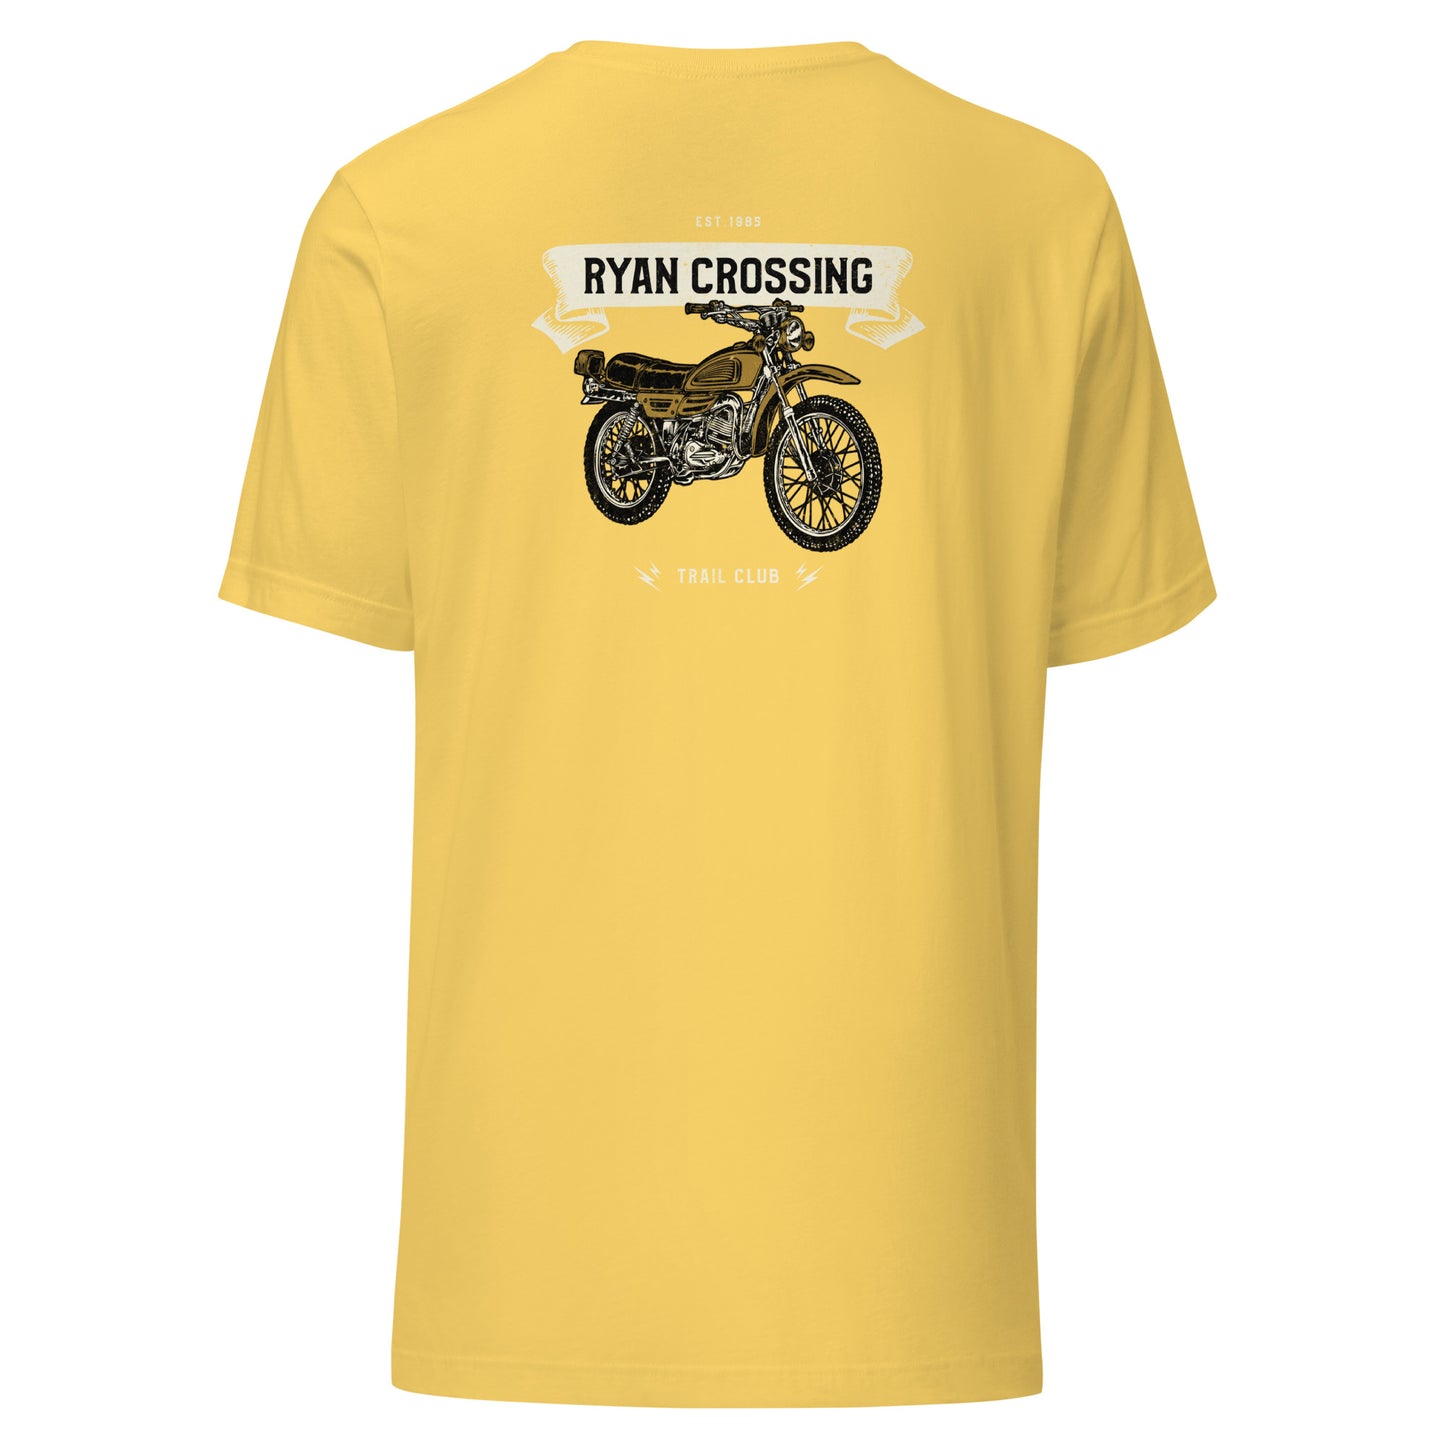 Motocross Trail Club T-shirt